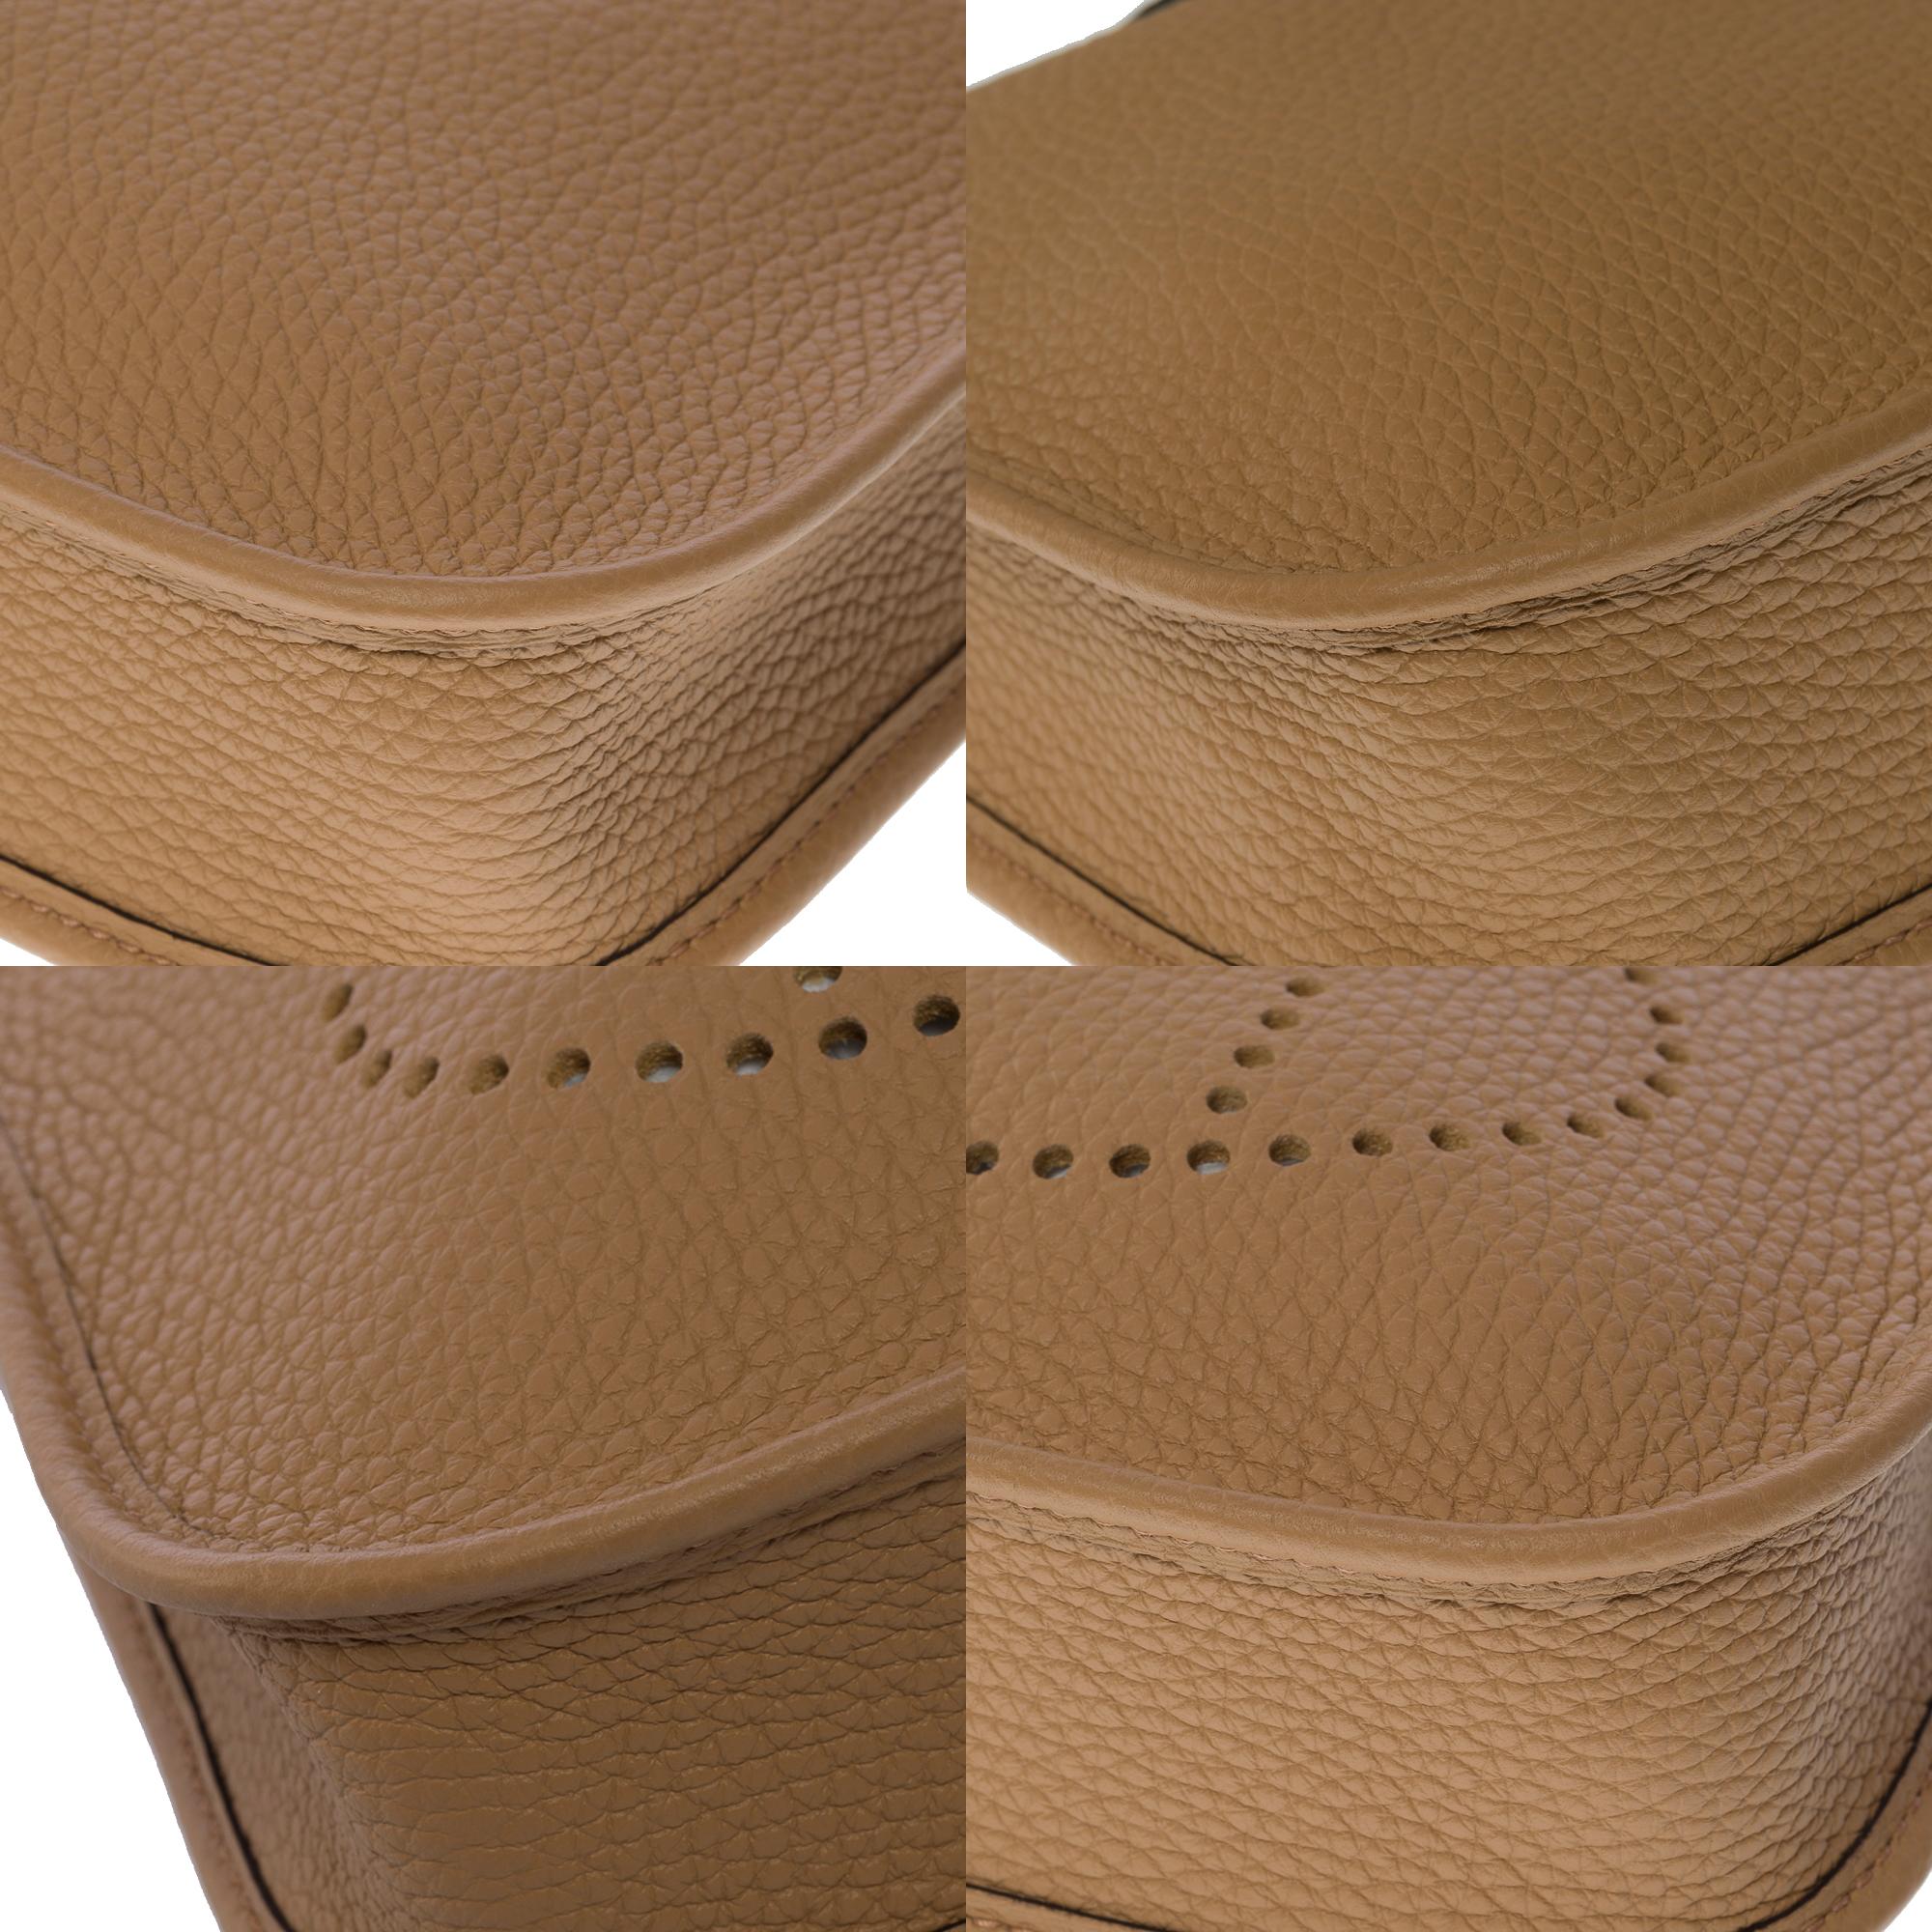 New Hermès Evelyne TPM shoulder bag in beige Taurillon Clemence leather, SHW 6